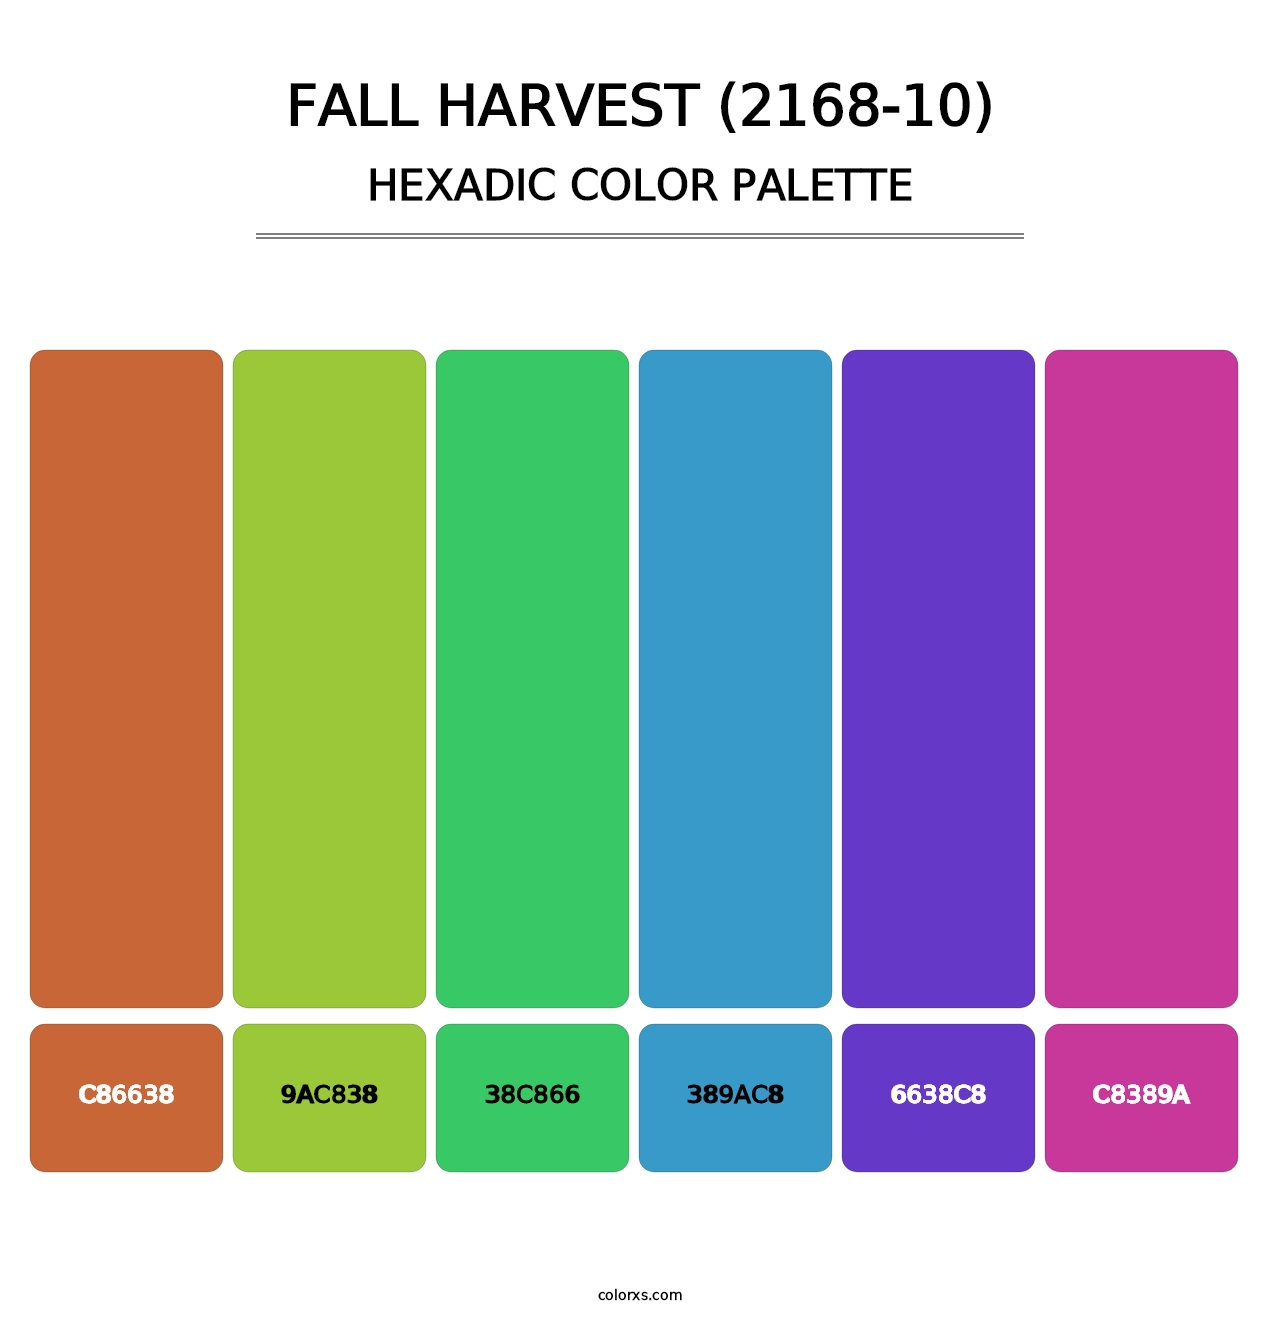 Fall Harvest (2168-10) - Hexadic Color Palette